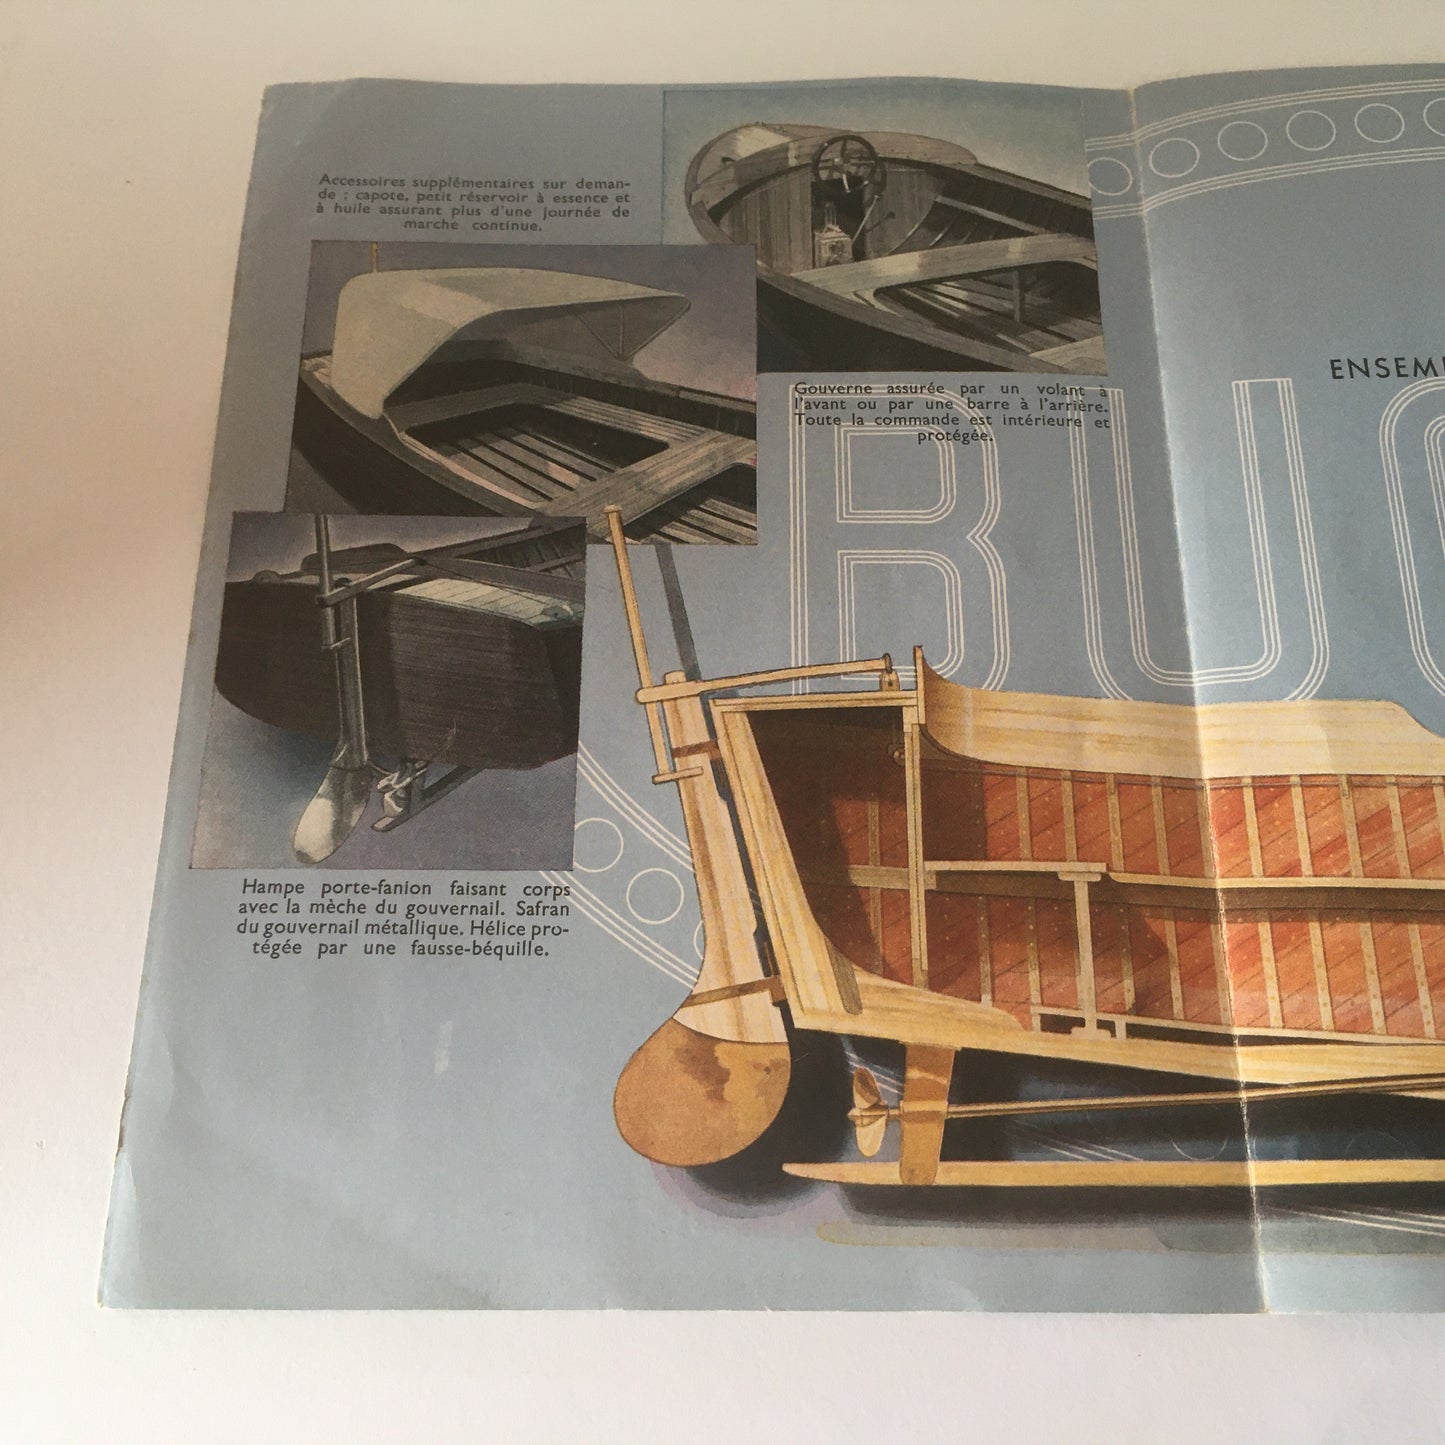 Bugatti, Brochure Cantieri Navali Maison-Laffitte Bugatti You-You, Disegnato da R. Géri Anno 1946